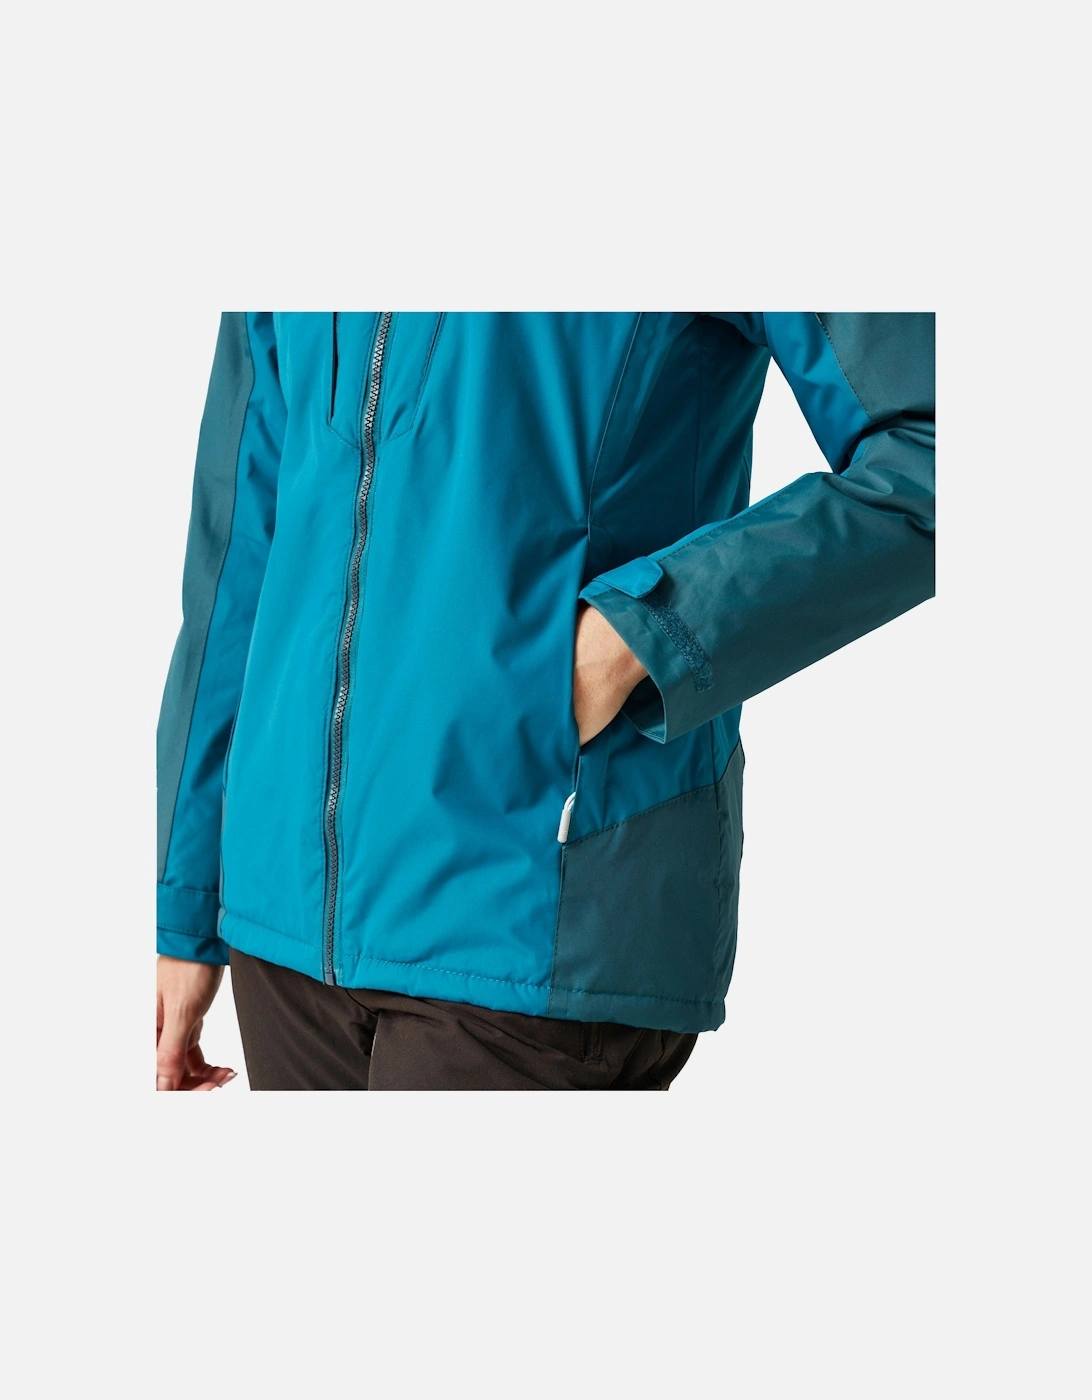 Womens/Ladies Calderdale Winter Waterproof Jacket